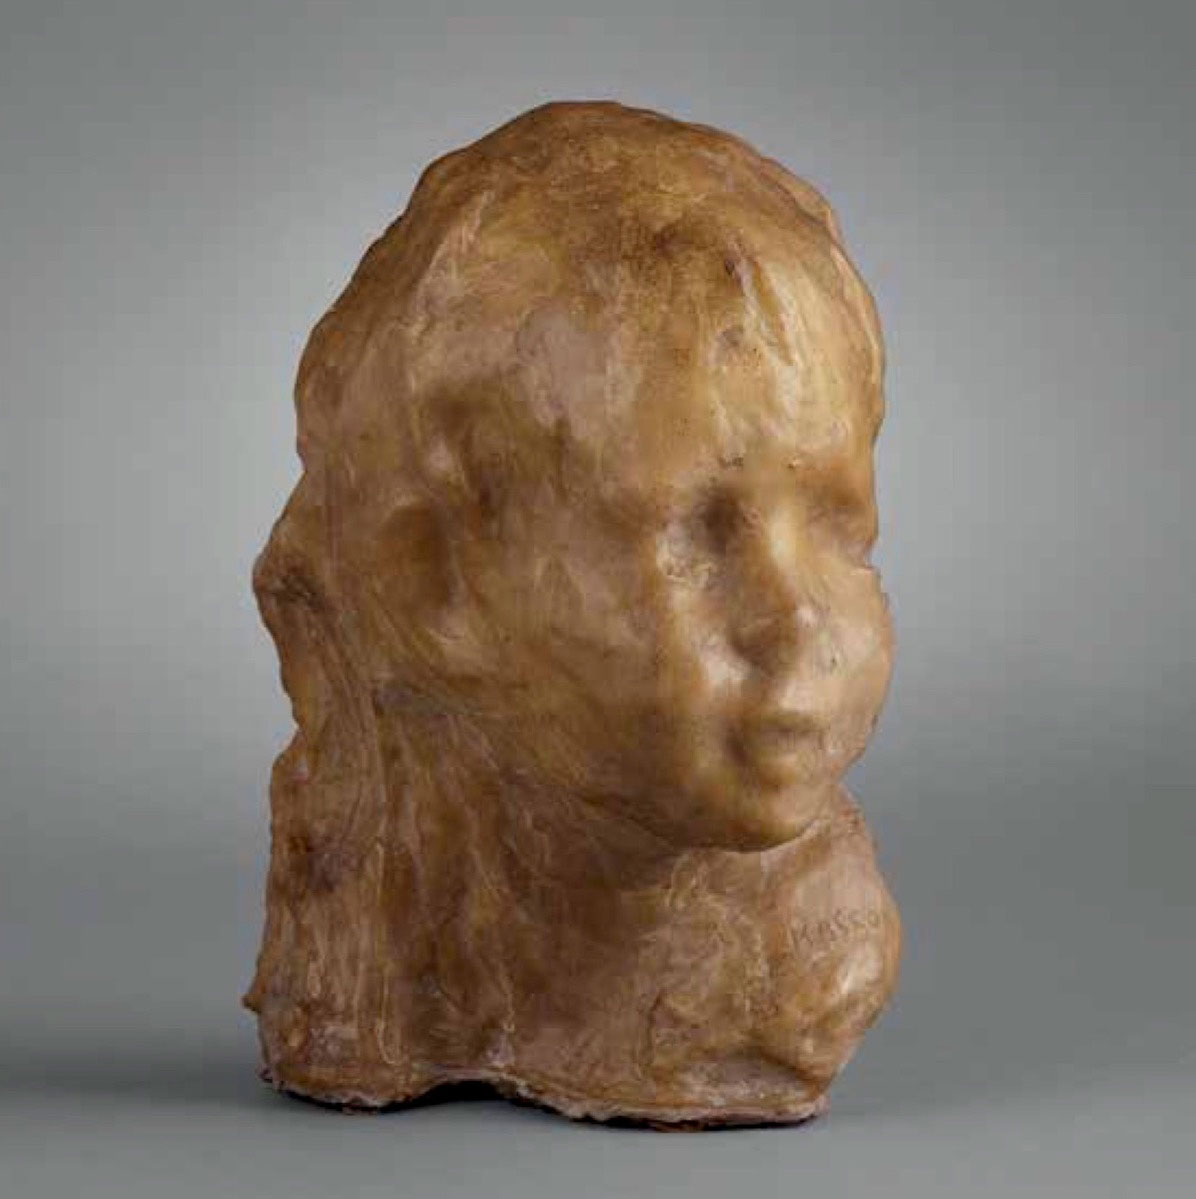 <b>Medardo Rosso, Bambino ebreo, 1892, Hilti Art Foundation</b>